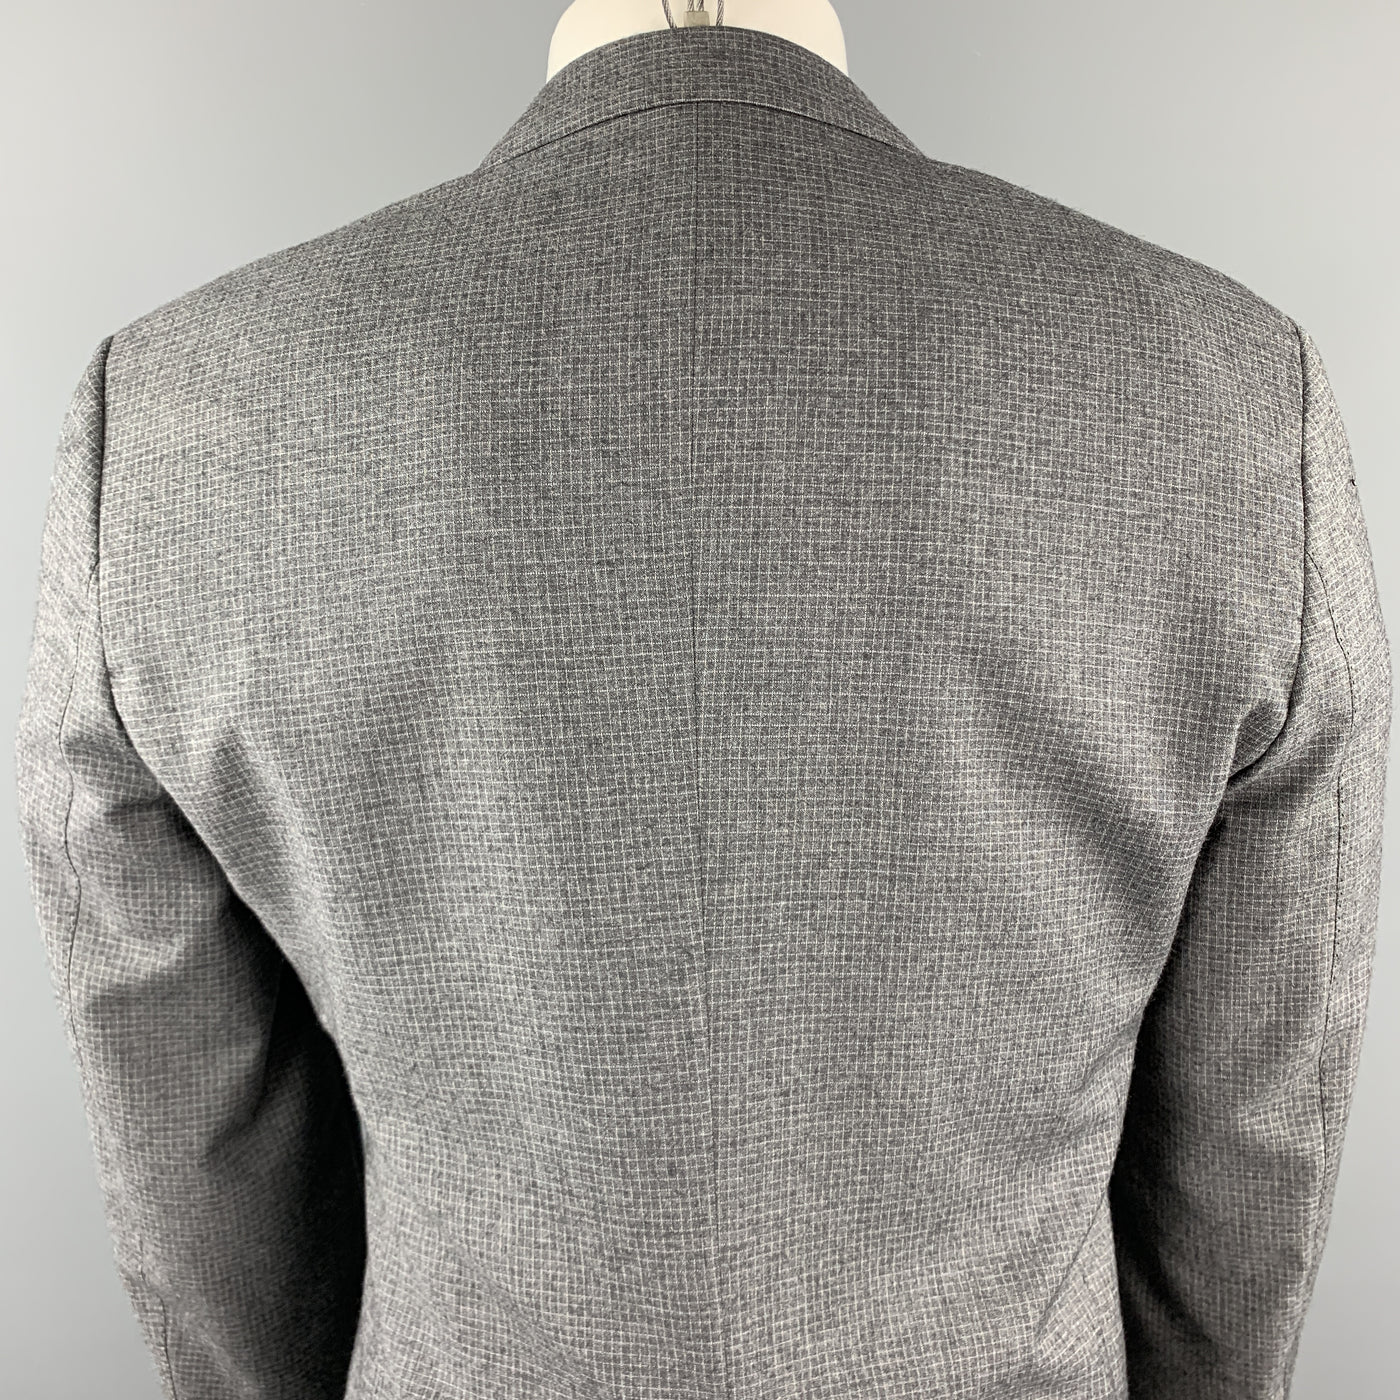 PAUL SMITH The Byard Size 38 Gray Grid Wool Notch Lapel Flap Pockets Sport Coat Jacket